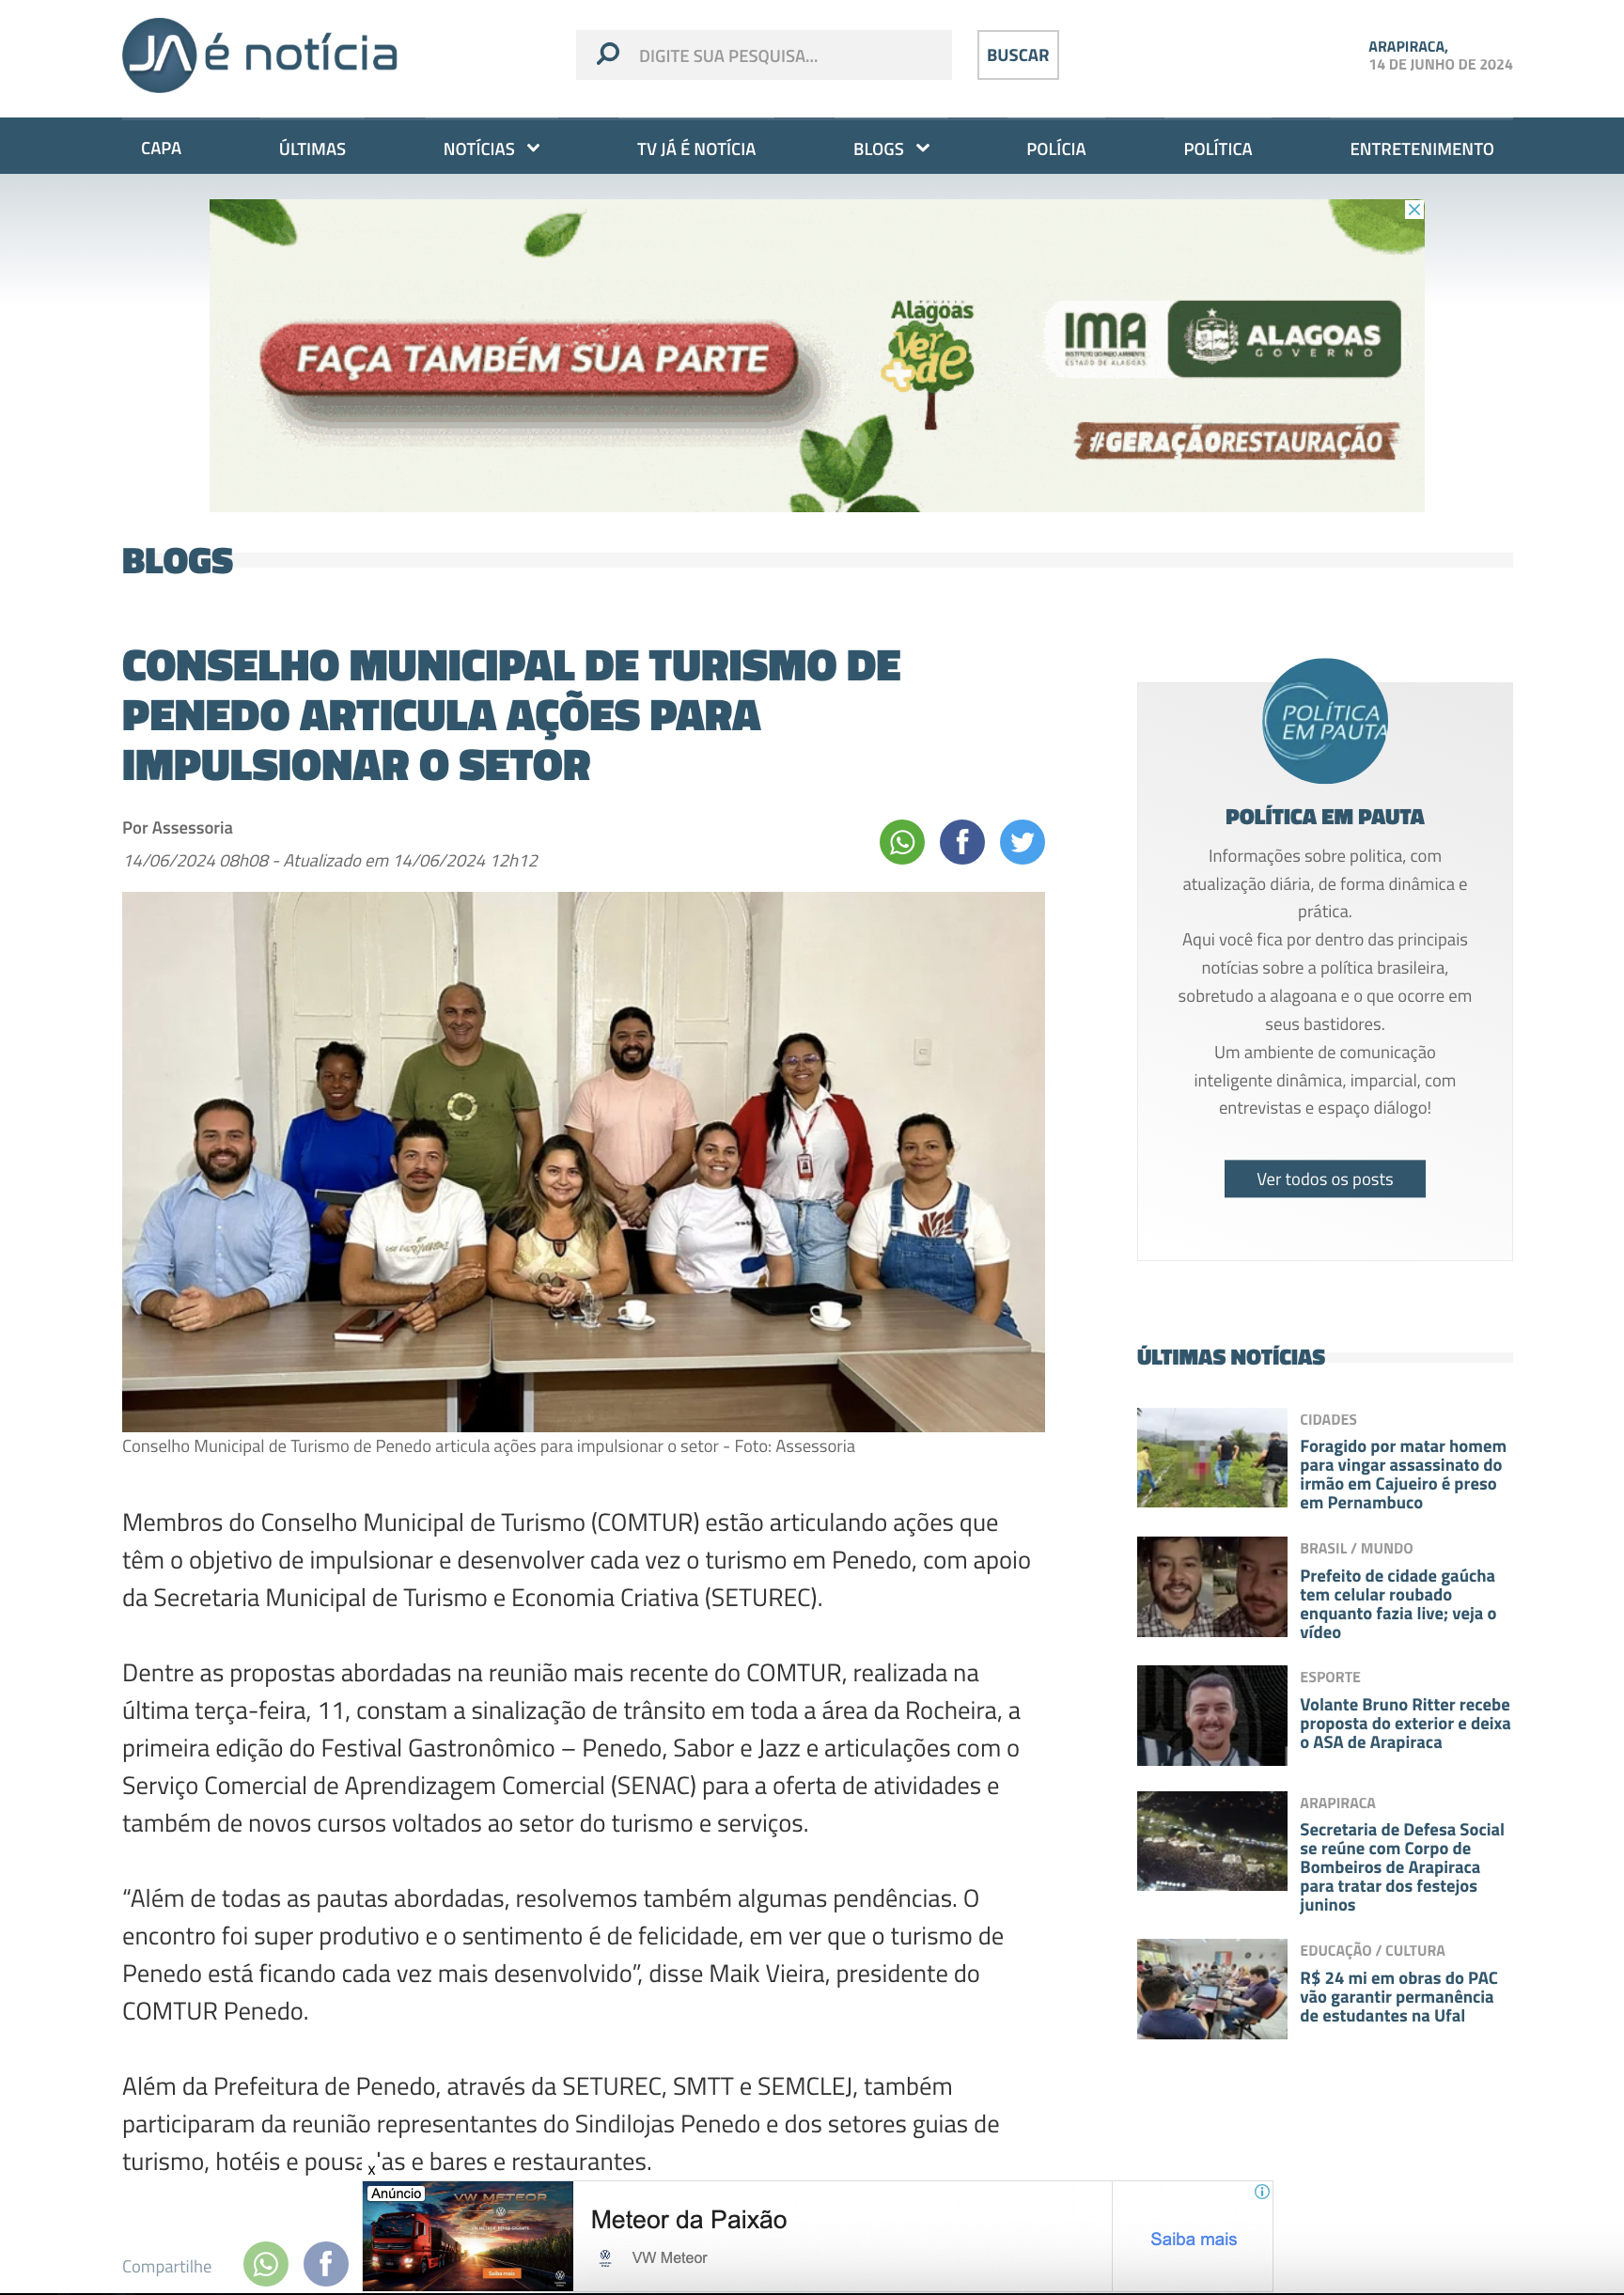 Conselho Municipal de Turismo de Penedo articula ações para impulsionar o setor